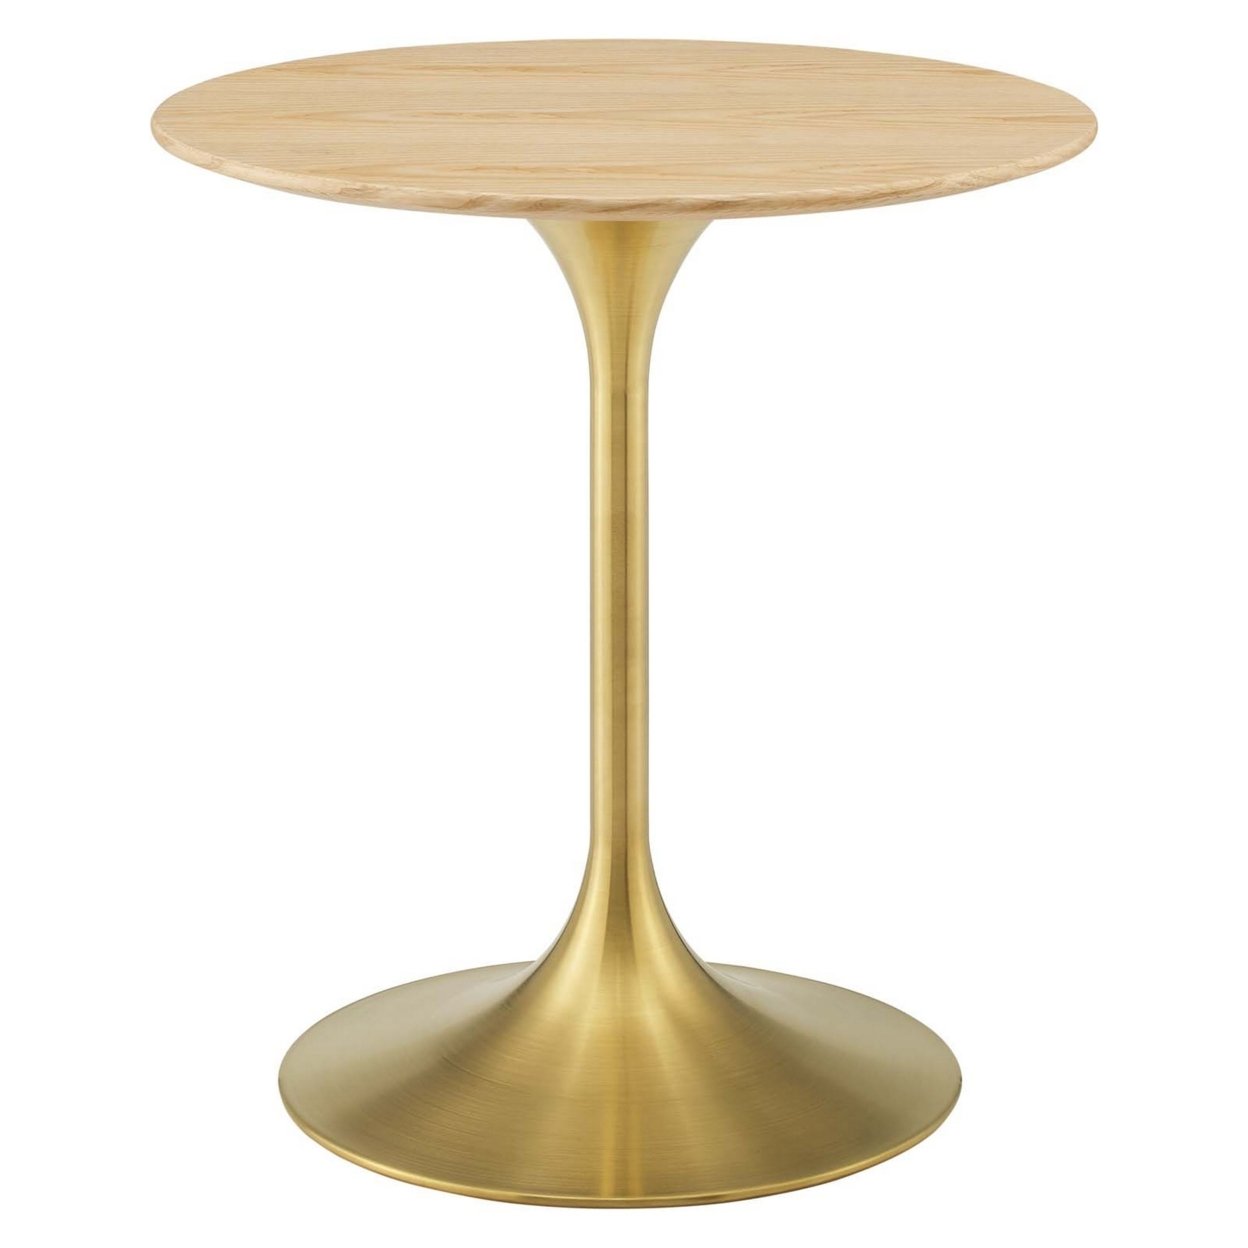 Lippa 28 Wood Dining Table, Gold Natural